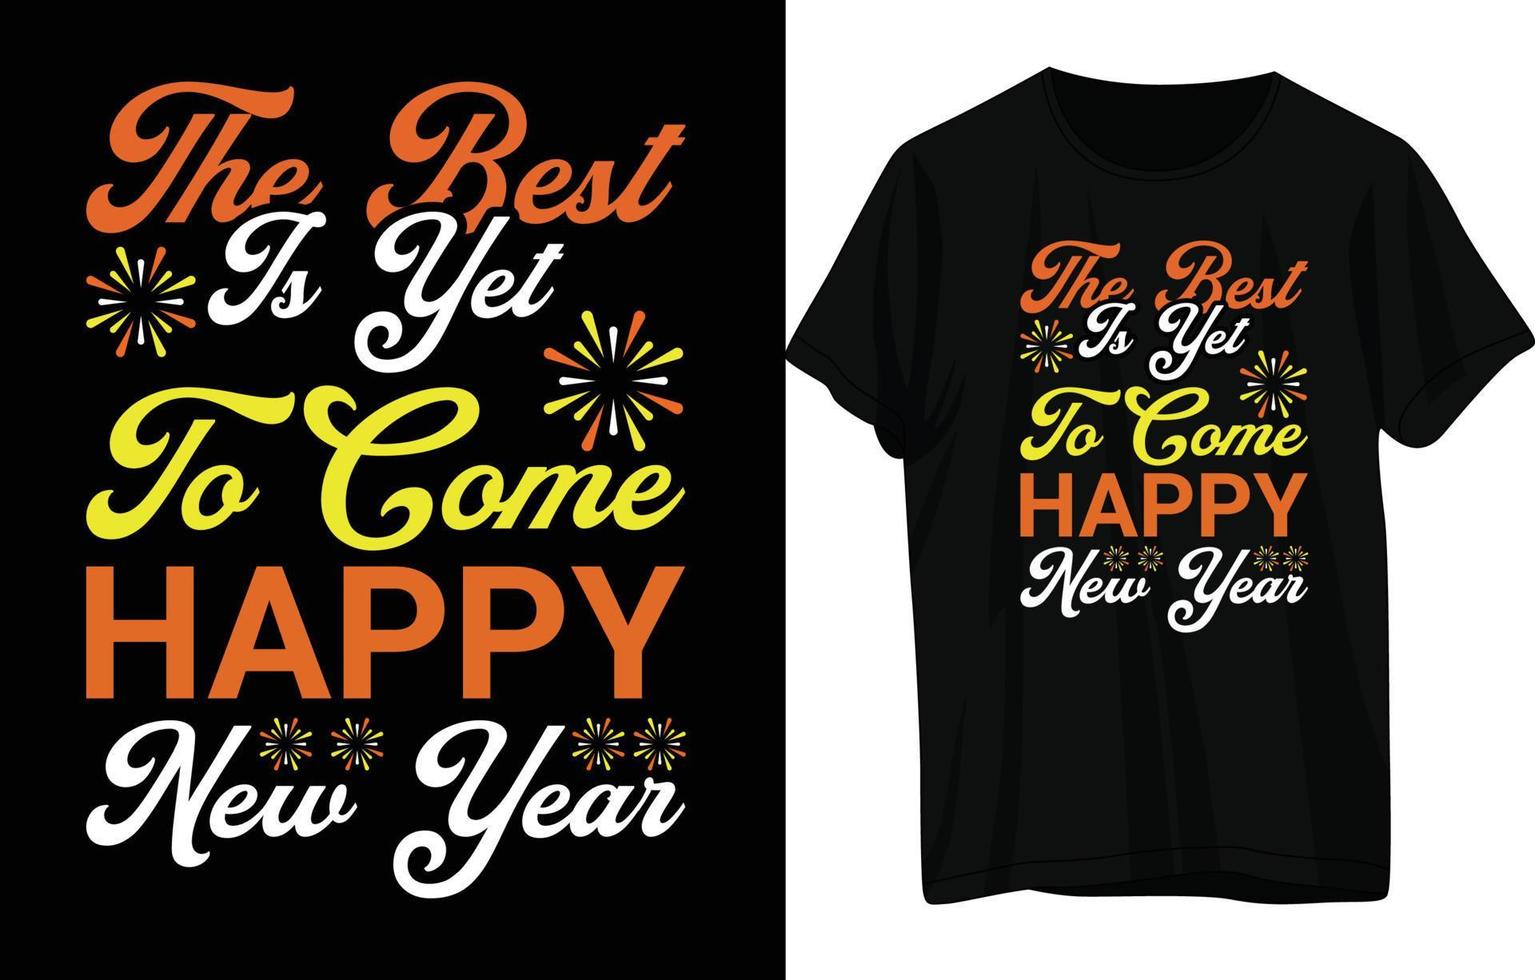 diseño de camiseta feliz año nuevo vector